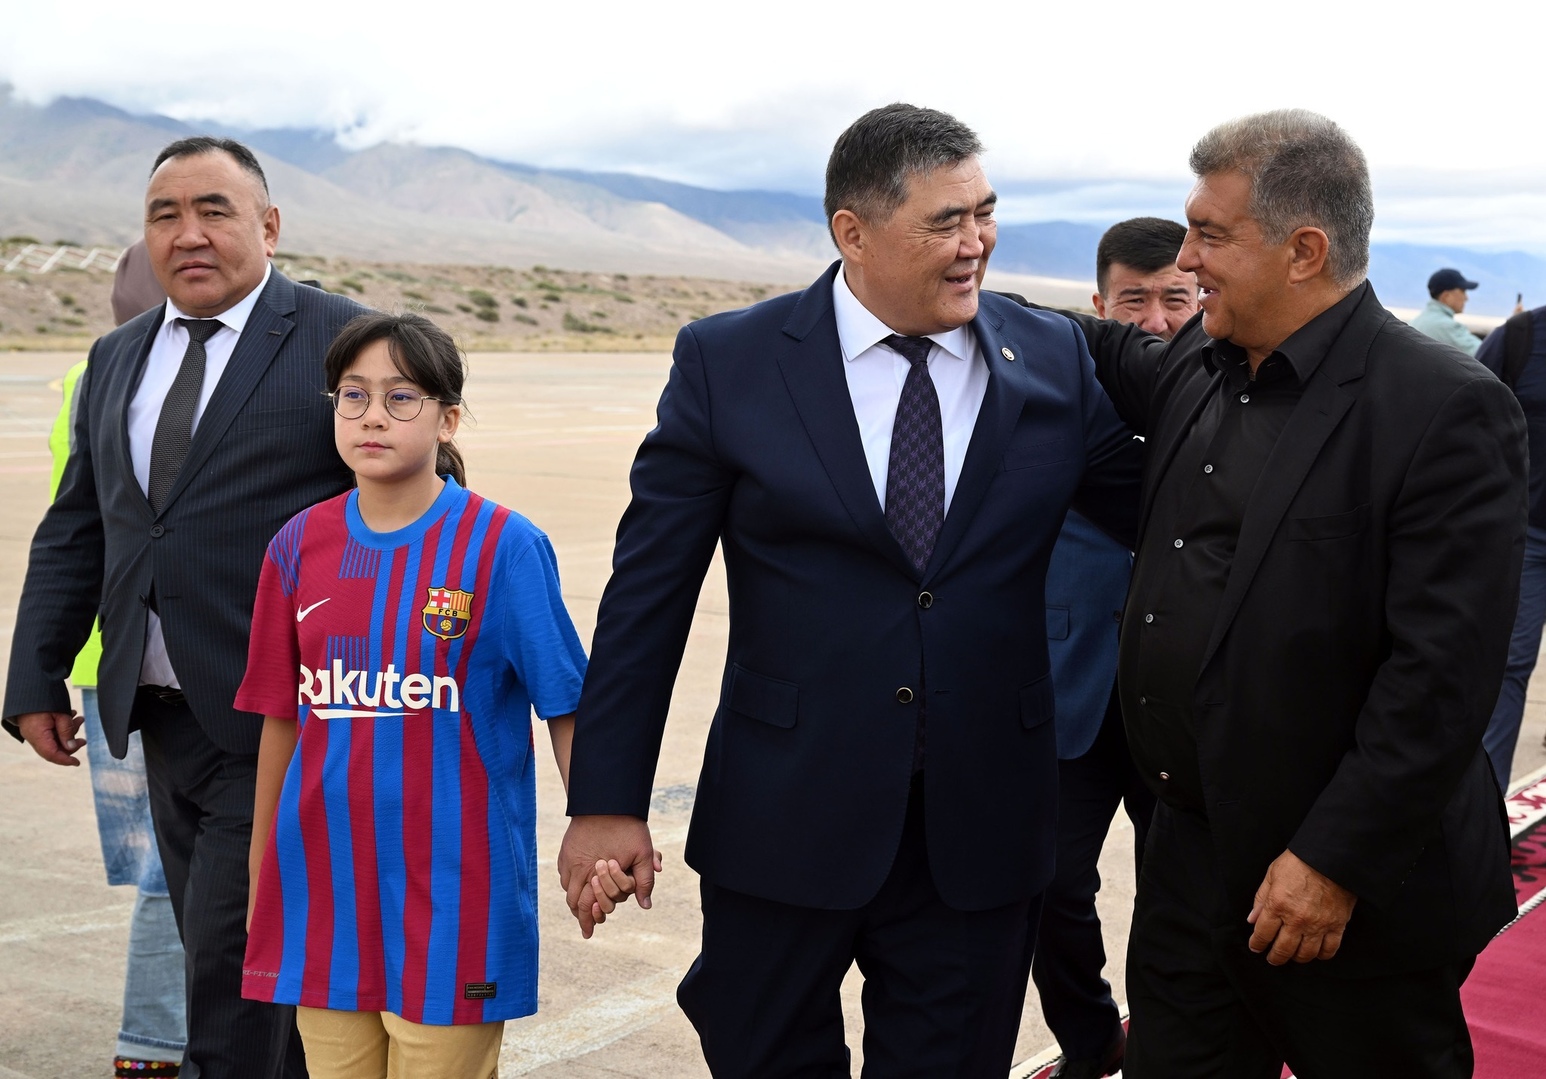 В Кыргызстан прибыли легенды клуба «Барселона». Как их встретили - фото